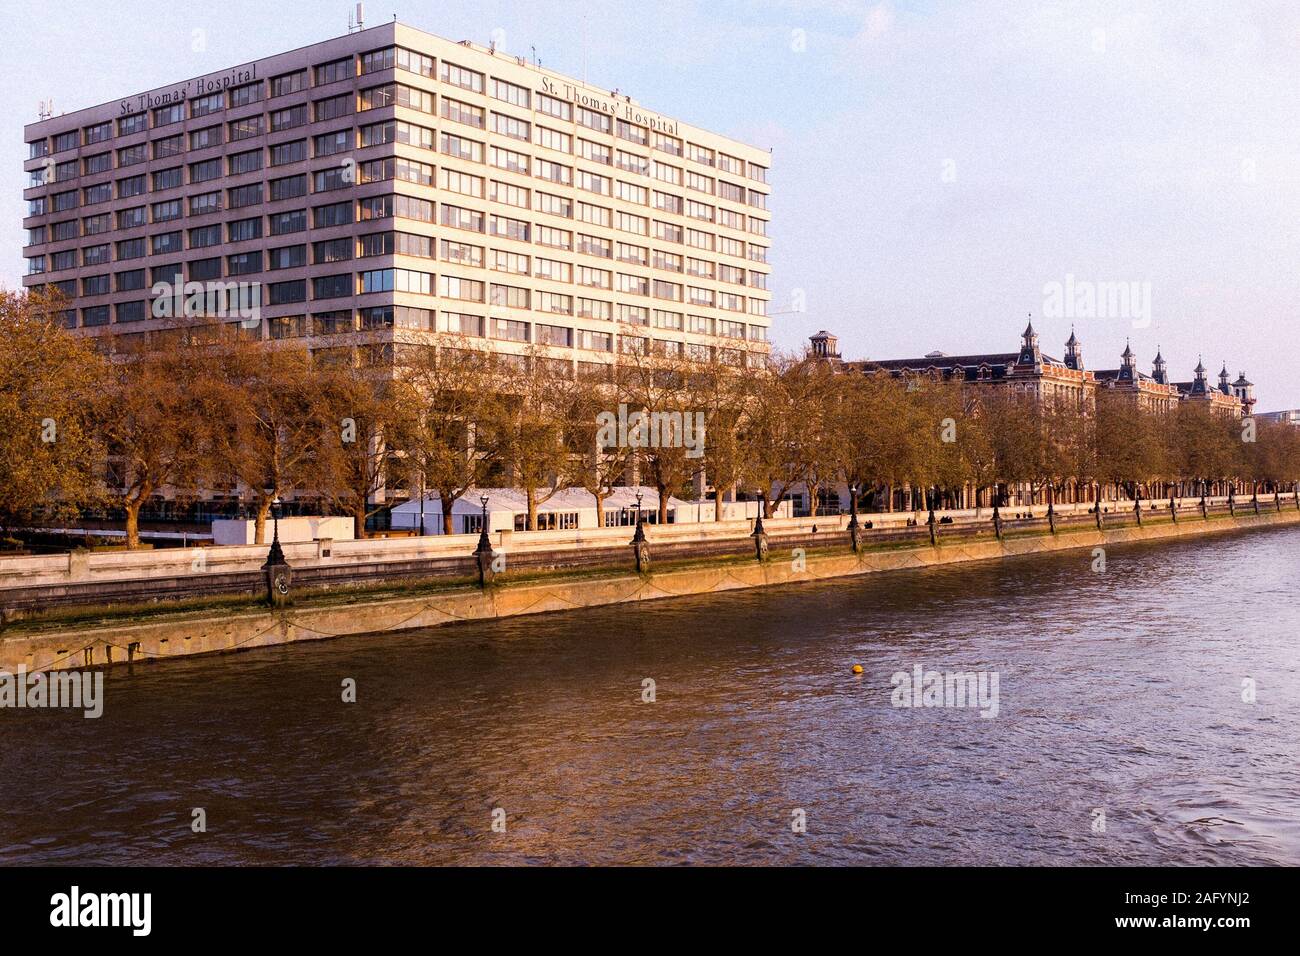 St Thomas' Hospital, à la lumière du soleil, extraite du Westminster Bridge, London UK Banque D'Images